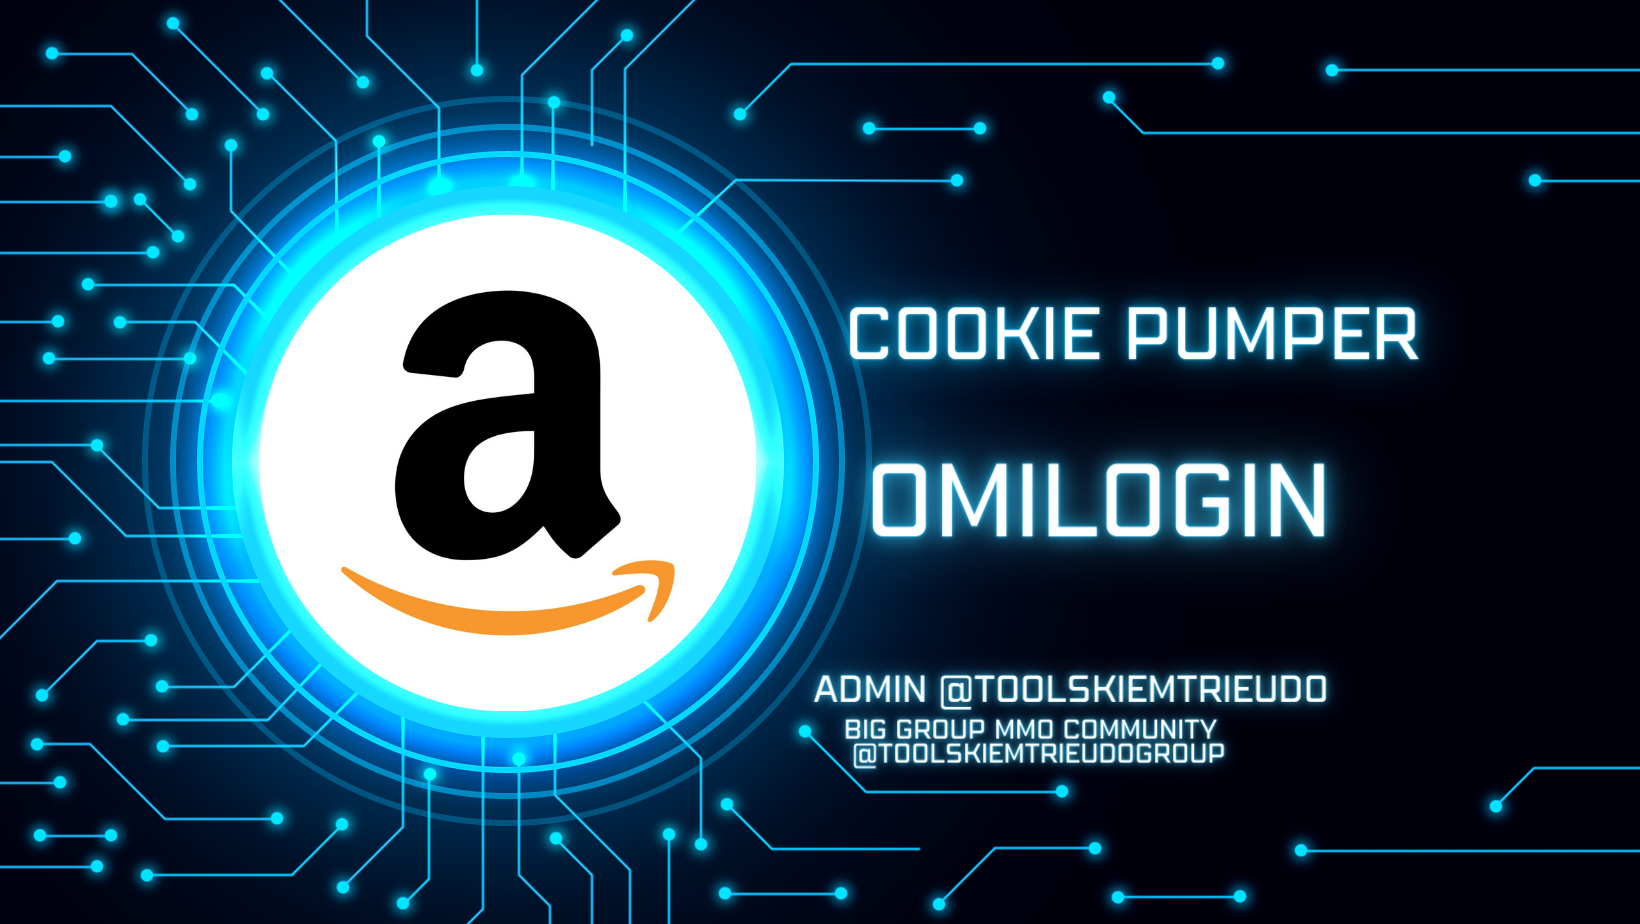 Công cụ nuôi tài khoản amazon trên Ominilogin như người dùng thật- Amazon cookie Pumper on Ominilogin Automation like a human